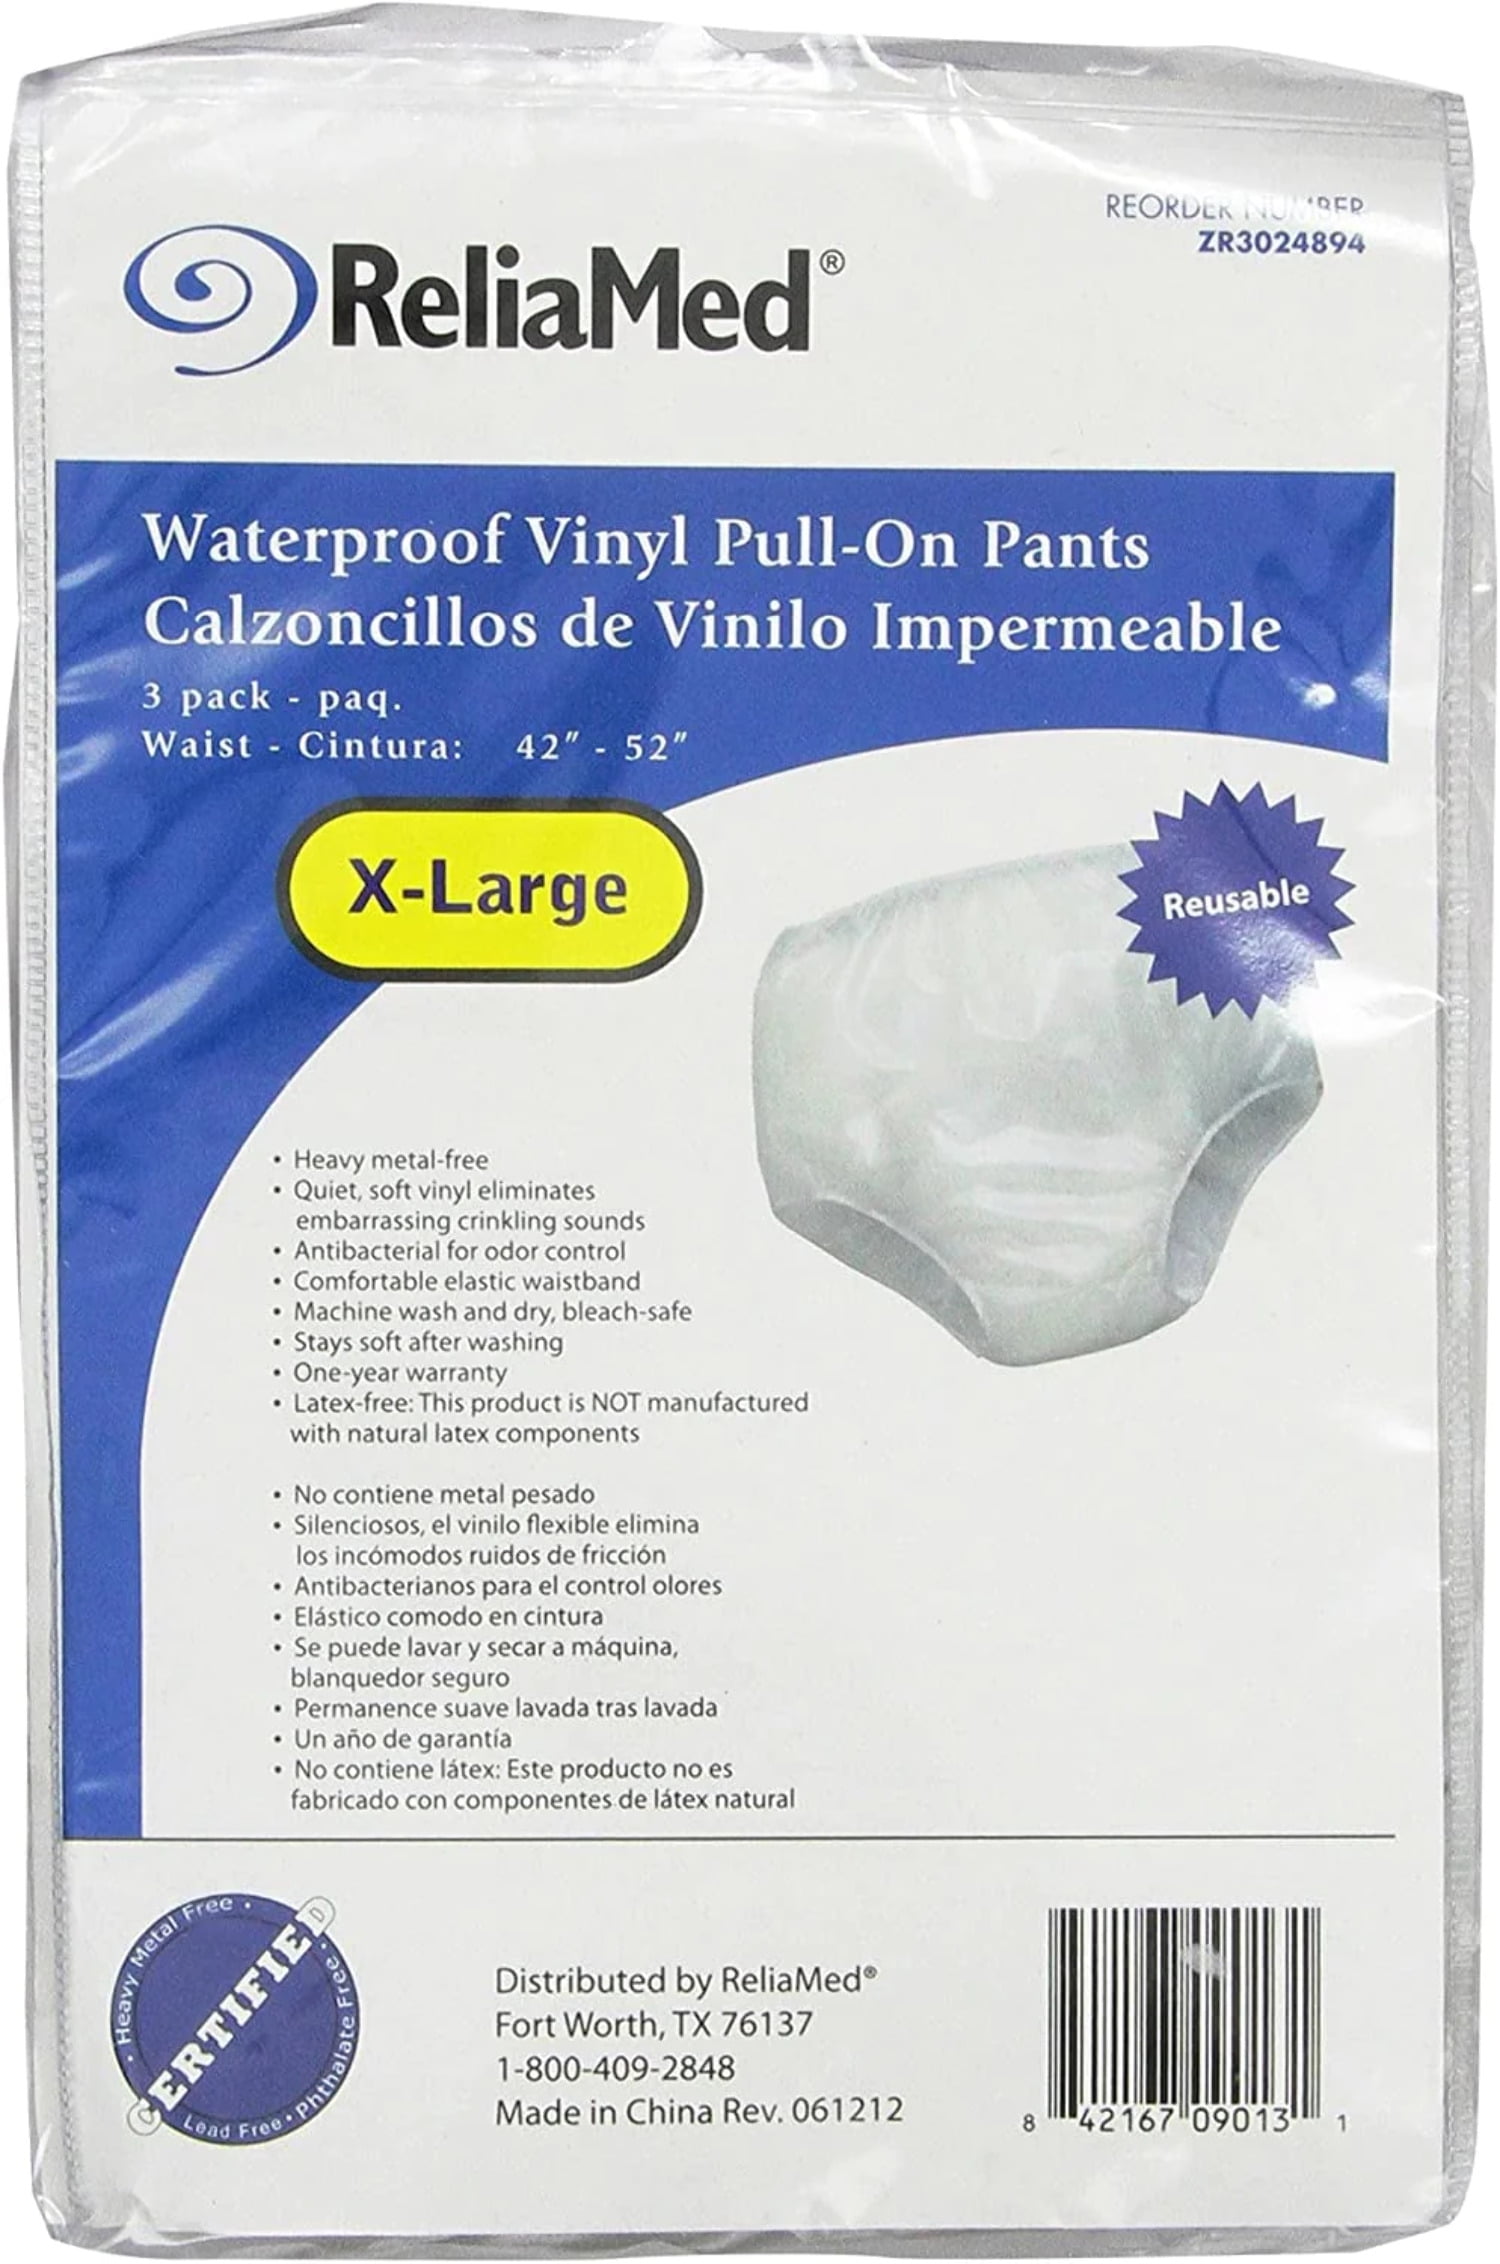 DRYtex® Waterproof PVC Pants